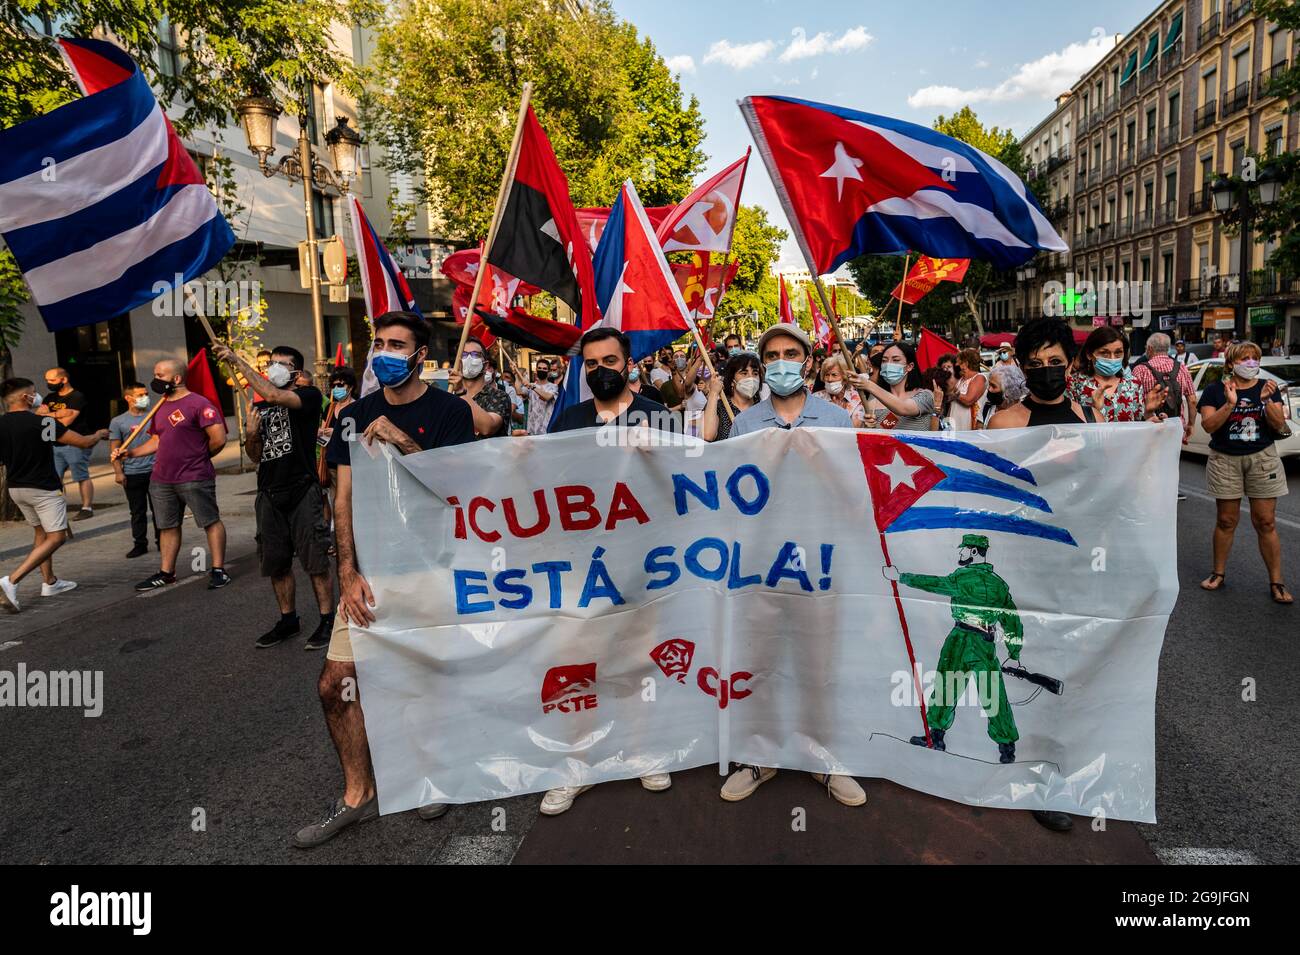 Madrid, Spagna. 26 luglio 2021. Manifestanti con bandiere e cartelli durante una manifestazione contro l’embargo economico statunitense su Cuba, in coincidenza con il 26 luglio, giorno in cui la rivoluzione cubana è iniziata nel 1953, 68 anni fa. Il cartello recita: 'Cuba non sei solo' Credit: Marcos del Mazo/Alamy Live News Foto Stock